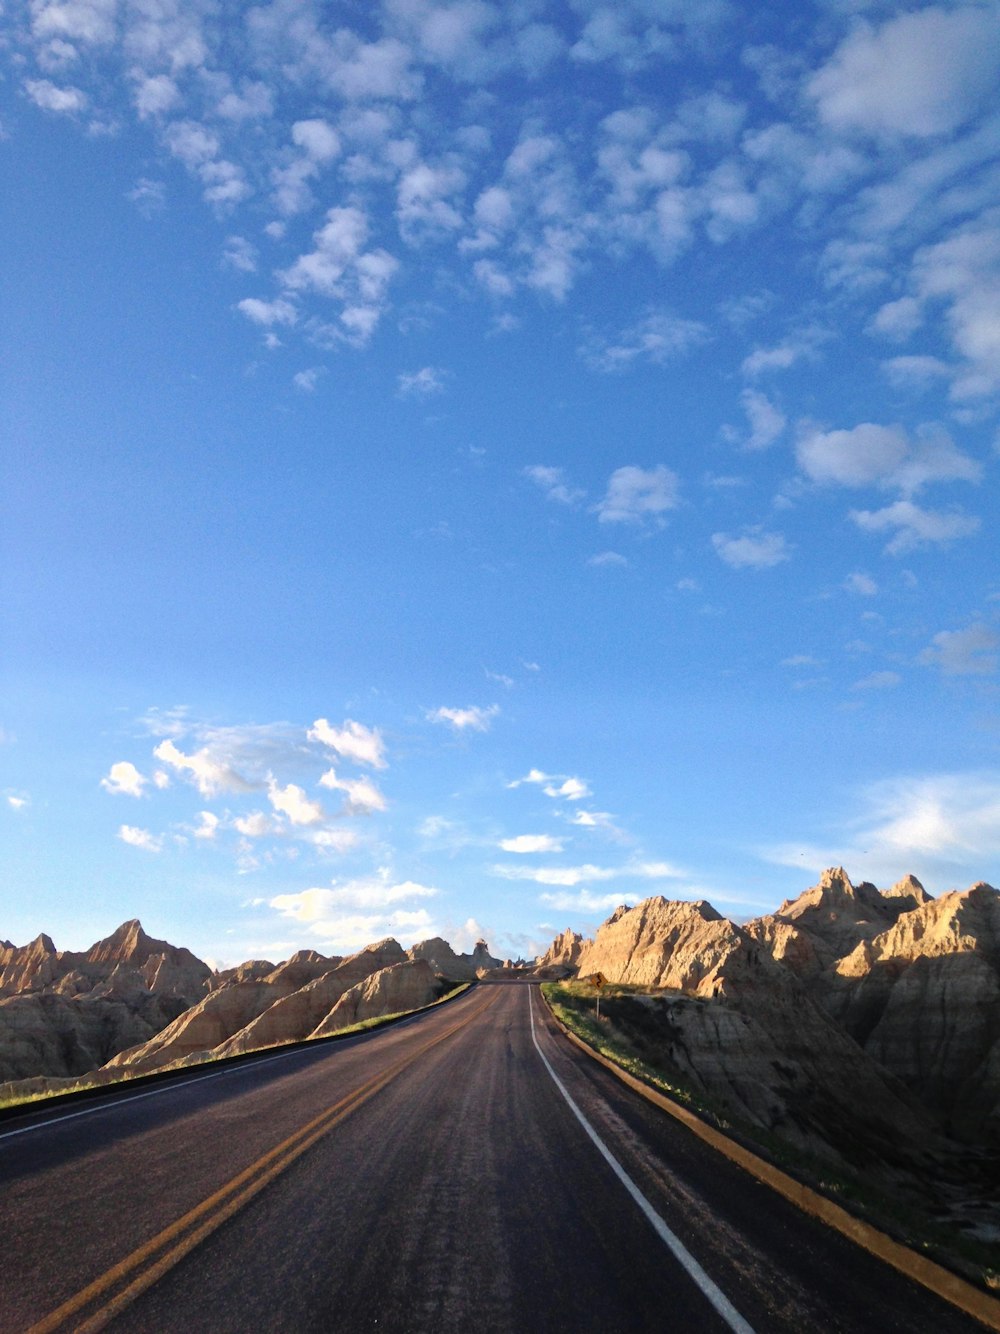 Tranquila carretera de hormigón rodeada de montañas rocosas durante el día